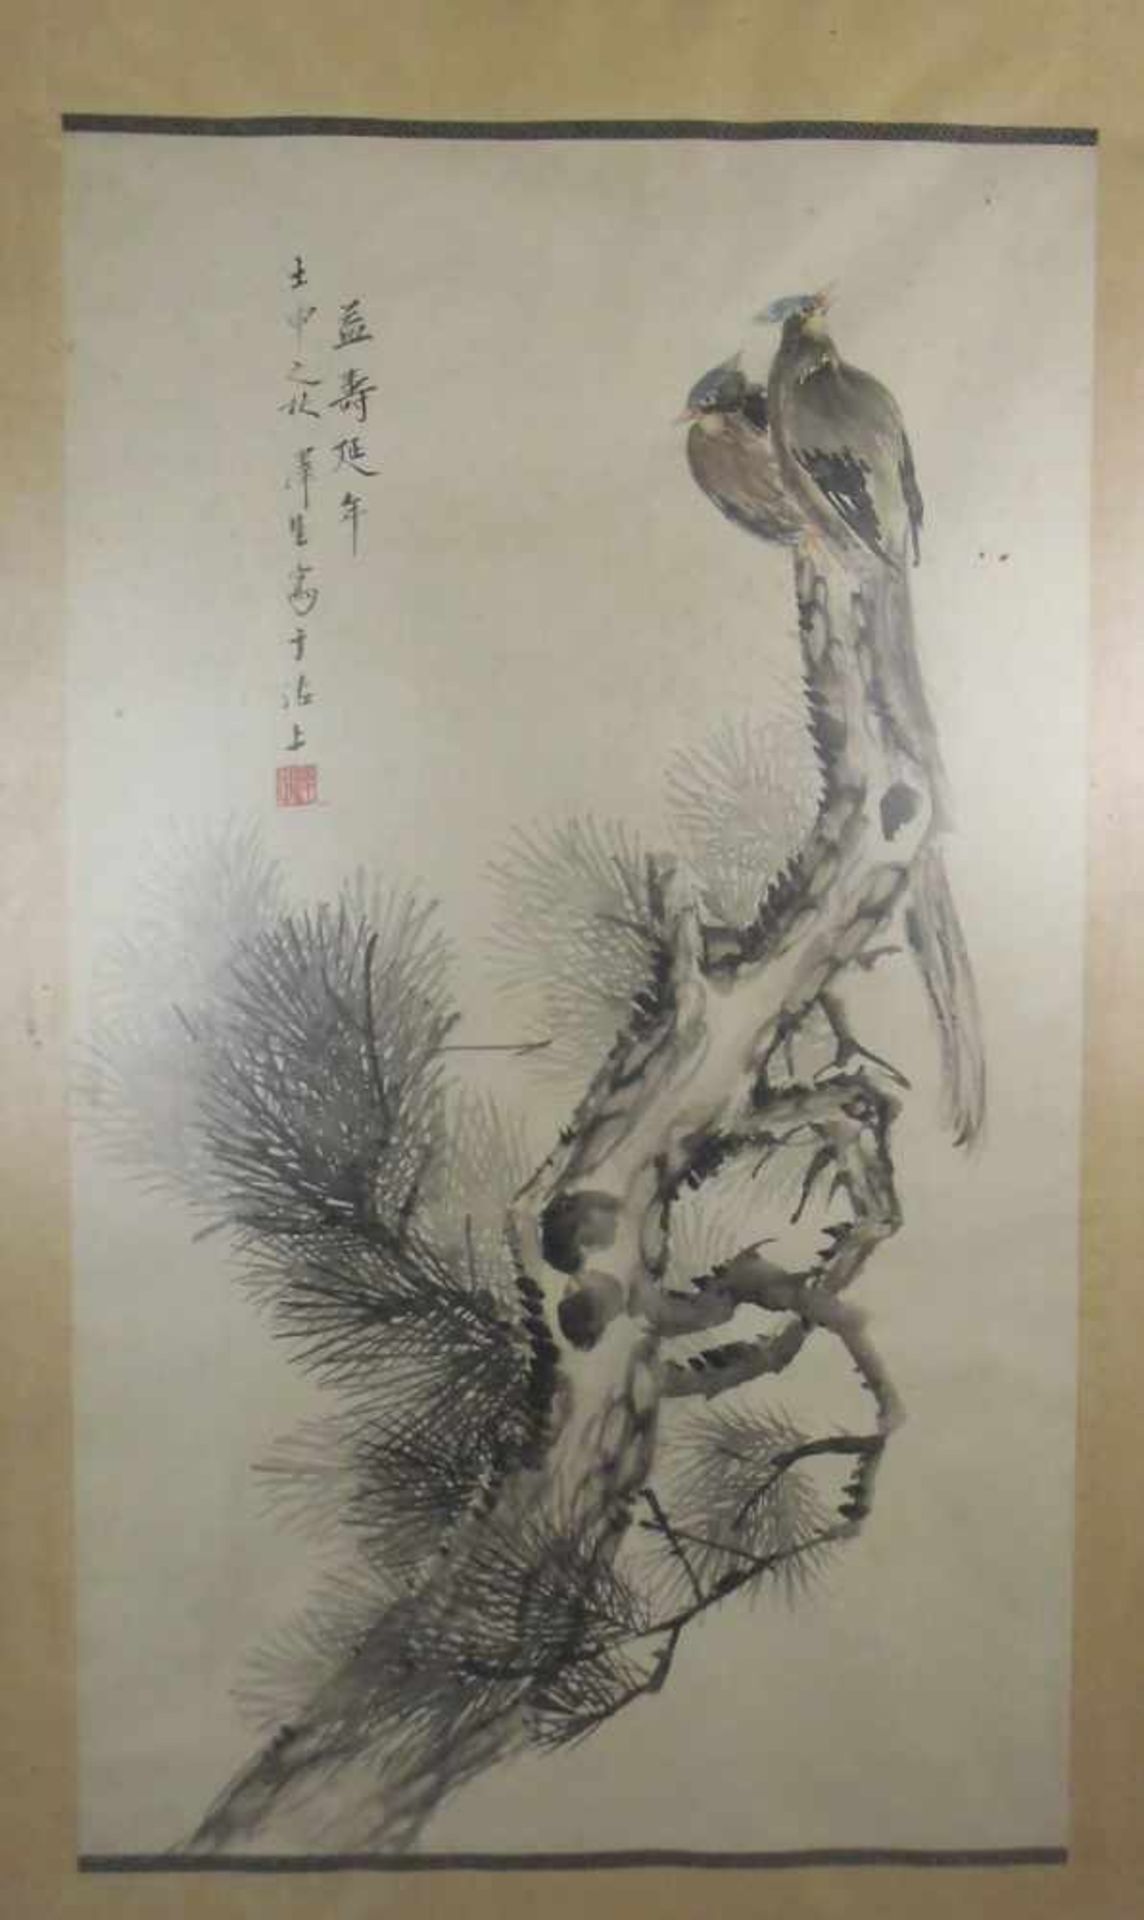 CHINESISCHES SEIDENBILD: "Haubenvögel auf einer Kiefer sitzend", Tusche und Aquarell in - Bild 2 aus 5